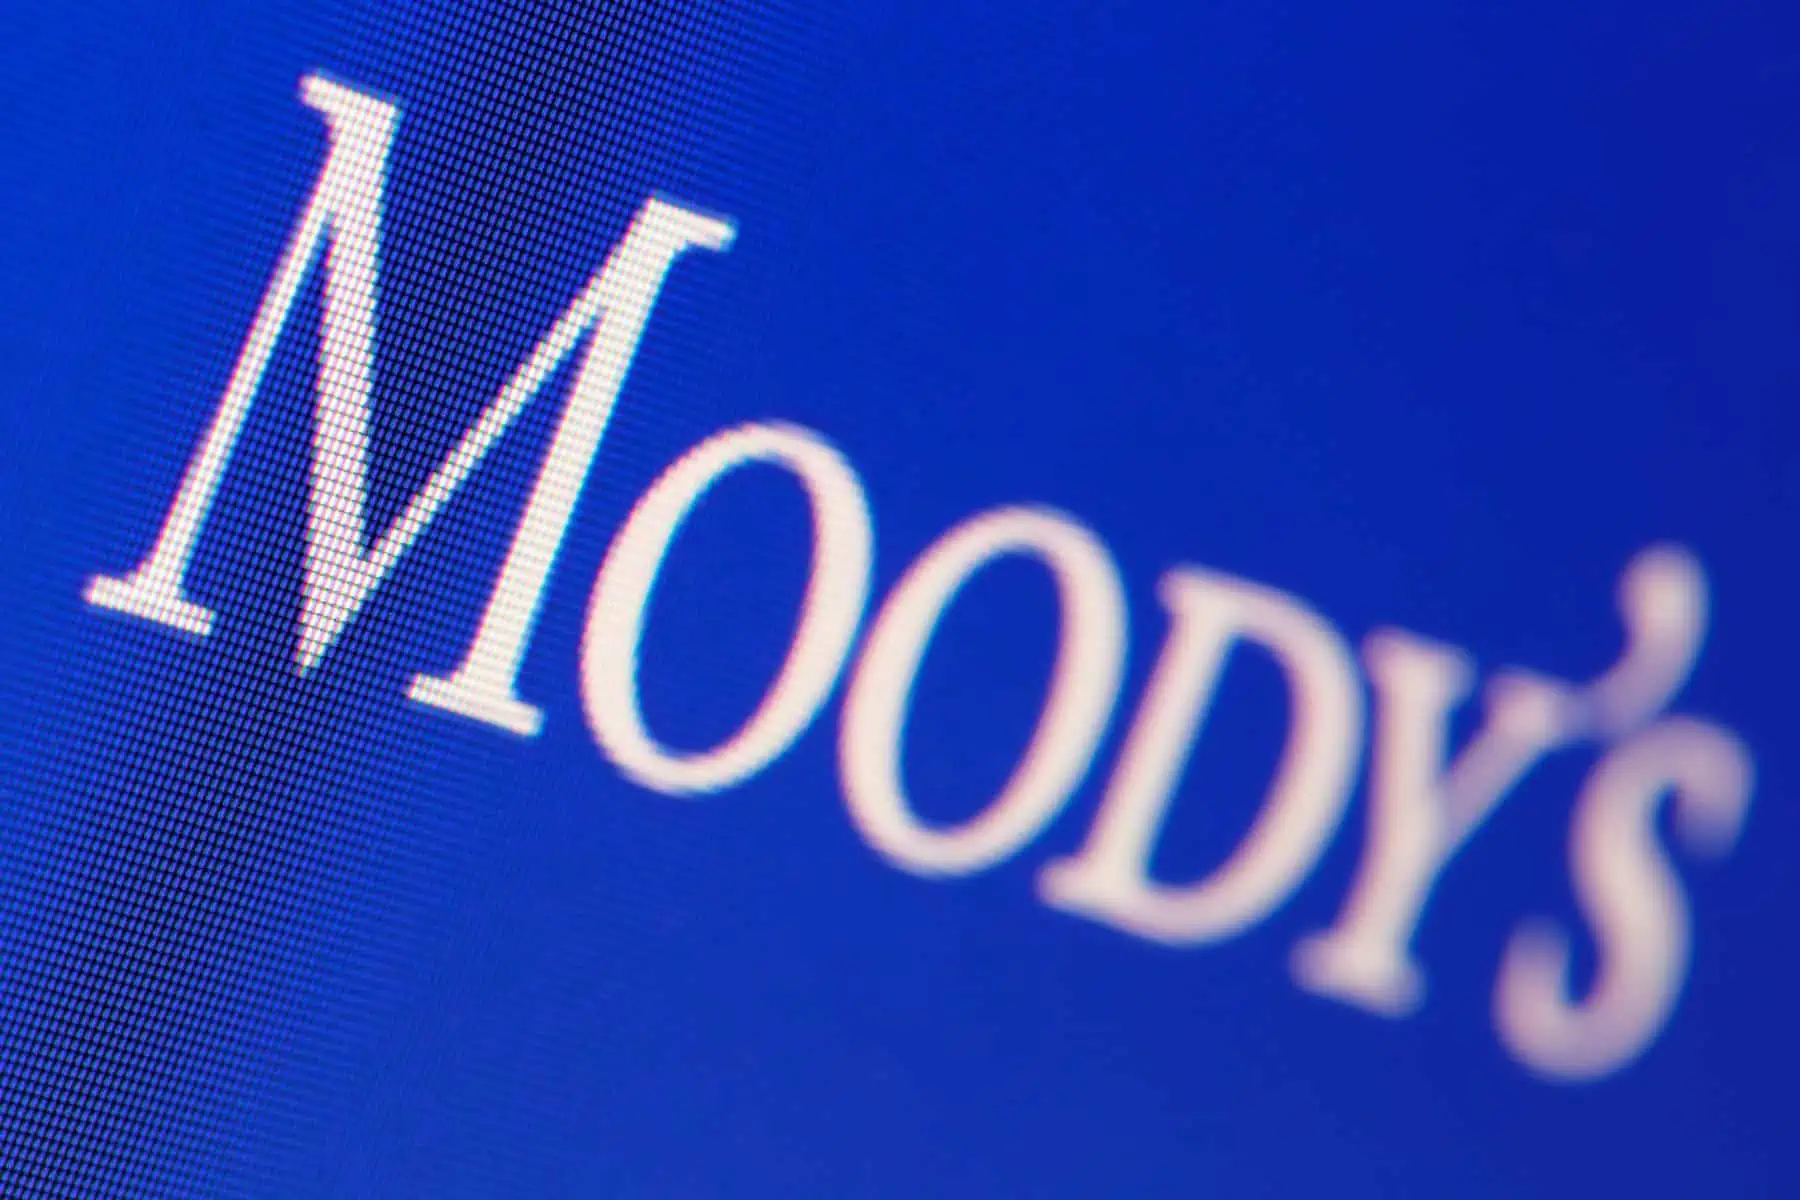 Moodys Analytics Recorta Calificaciones Crediticias a Bancos Estadounidenses